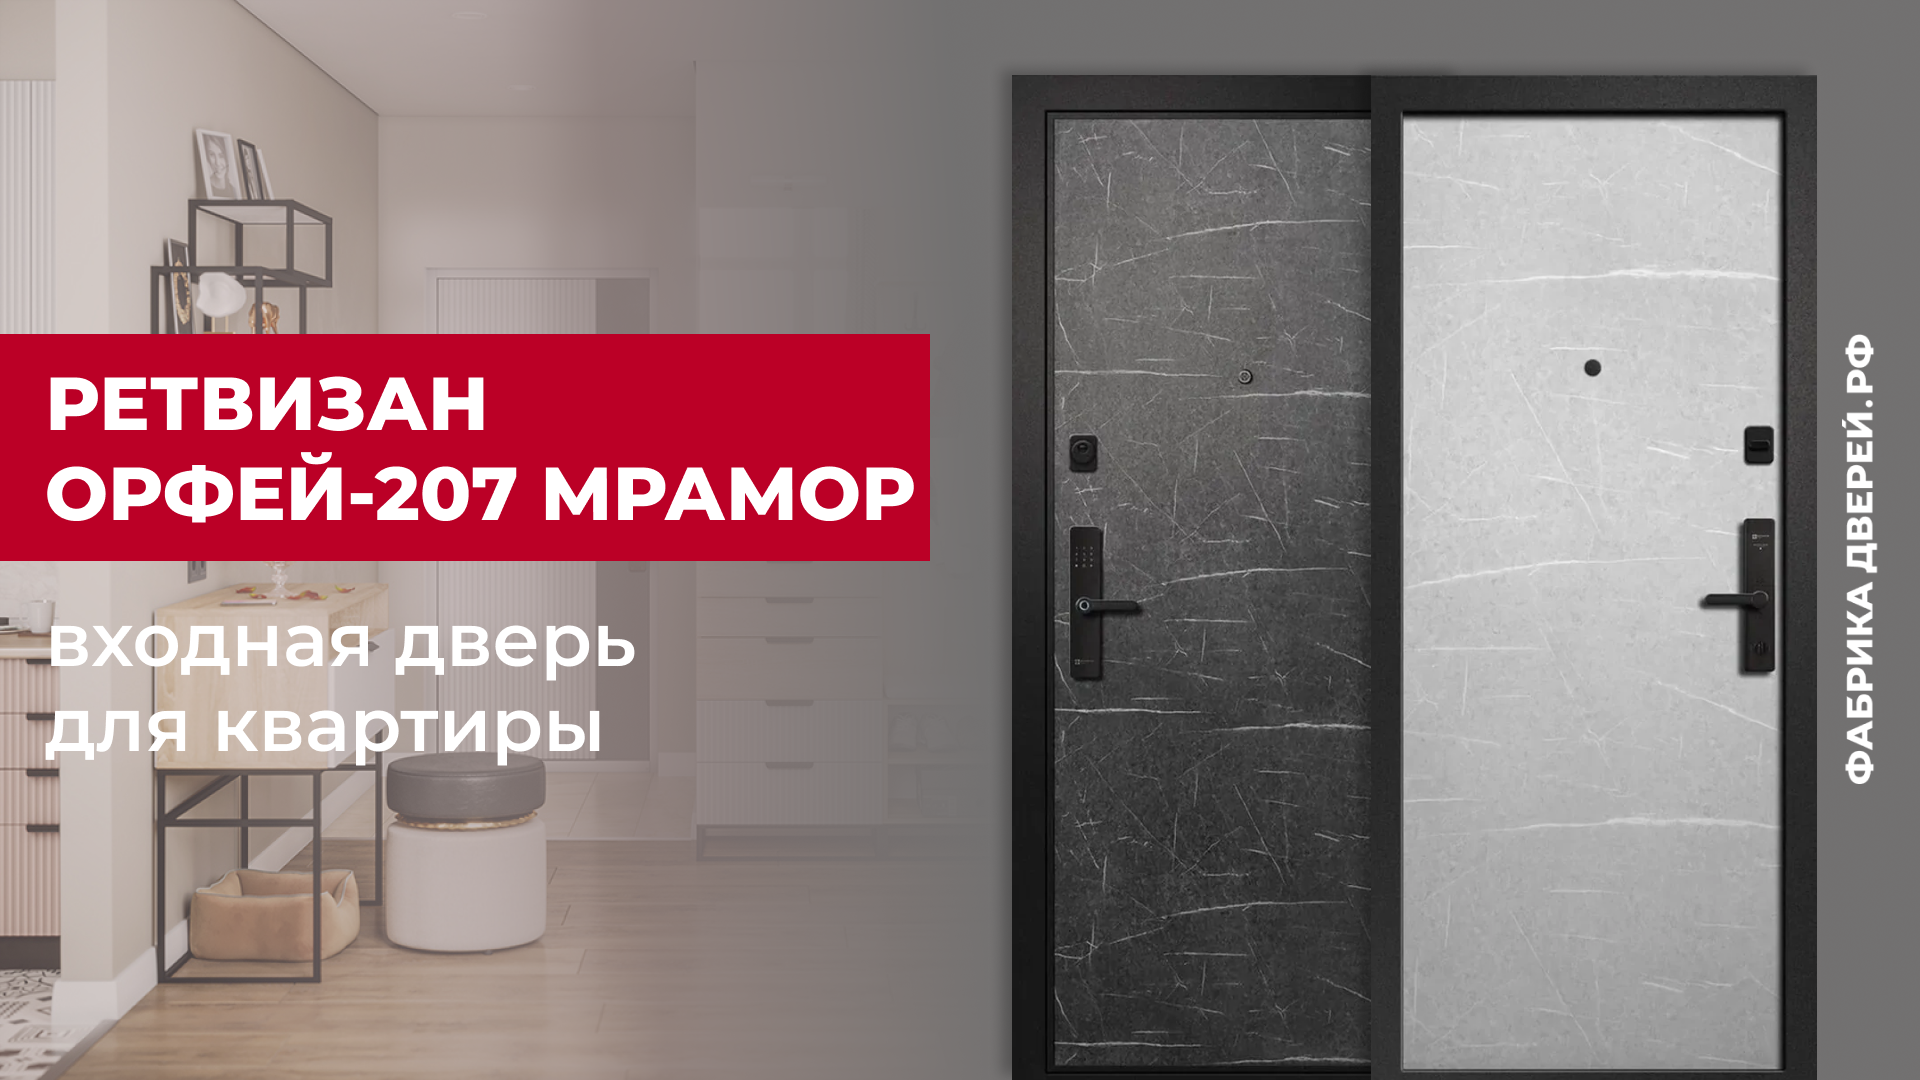 Входная дверь для квартиры Орфей-207 Мрамор завода Ретвизан #двери #входныедвери #diy #дом